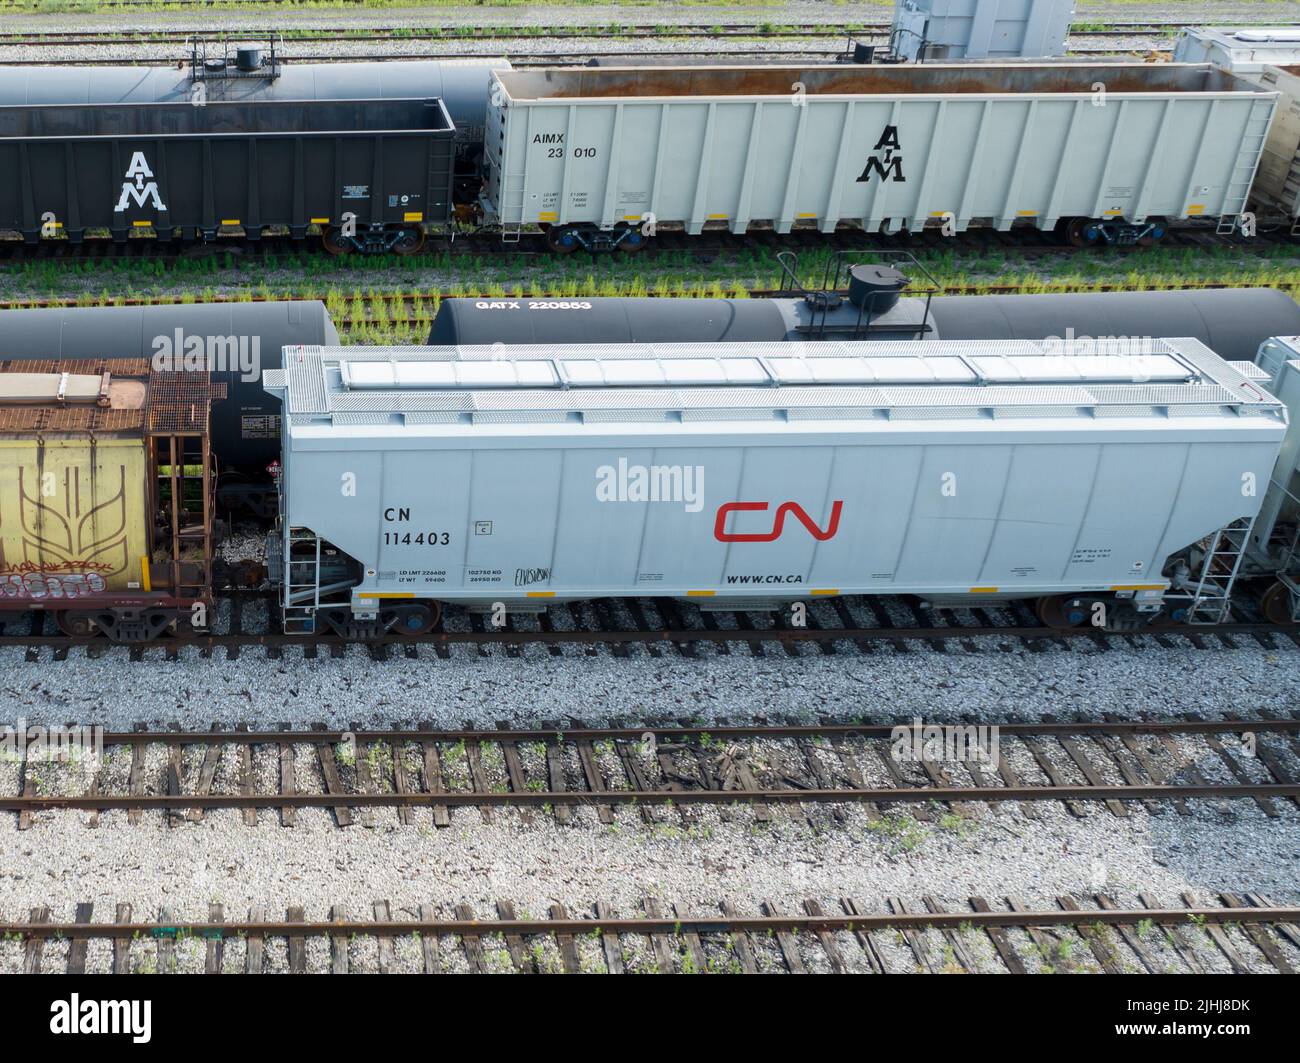 Un nuevo CN Rail (Canadian National Railway) vagón de la tolva tren se ve mientras está estacionario en un gran corral durante el día. Foto de stock